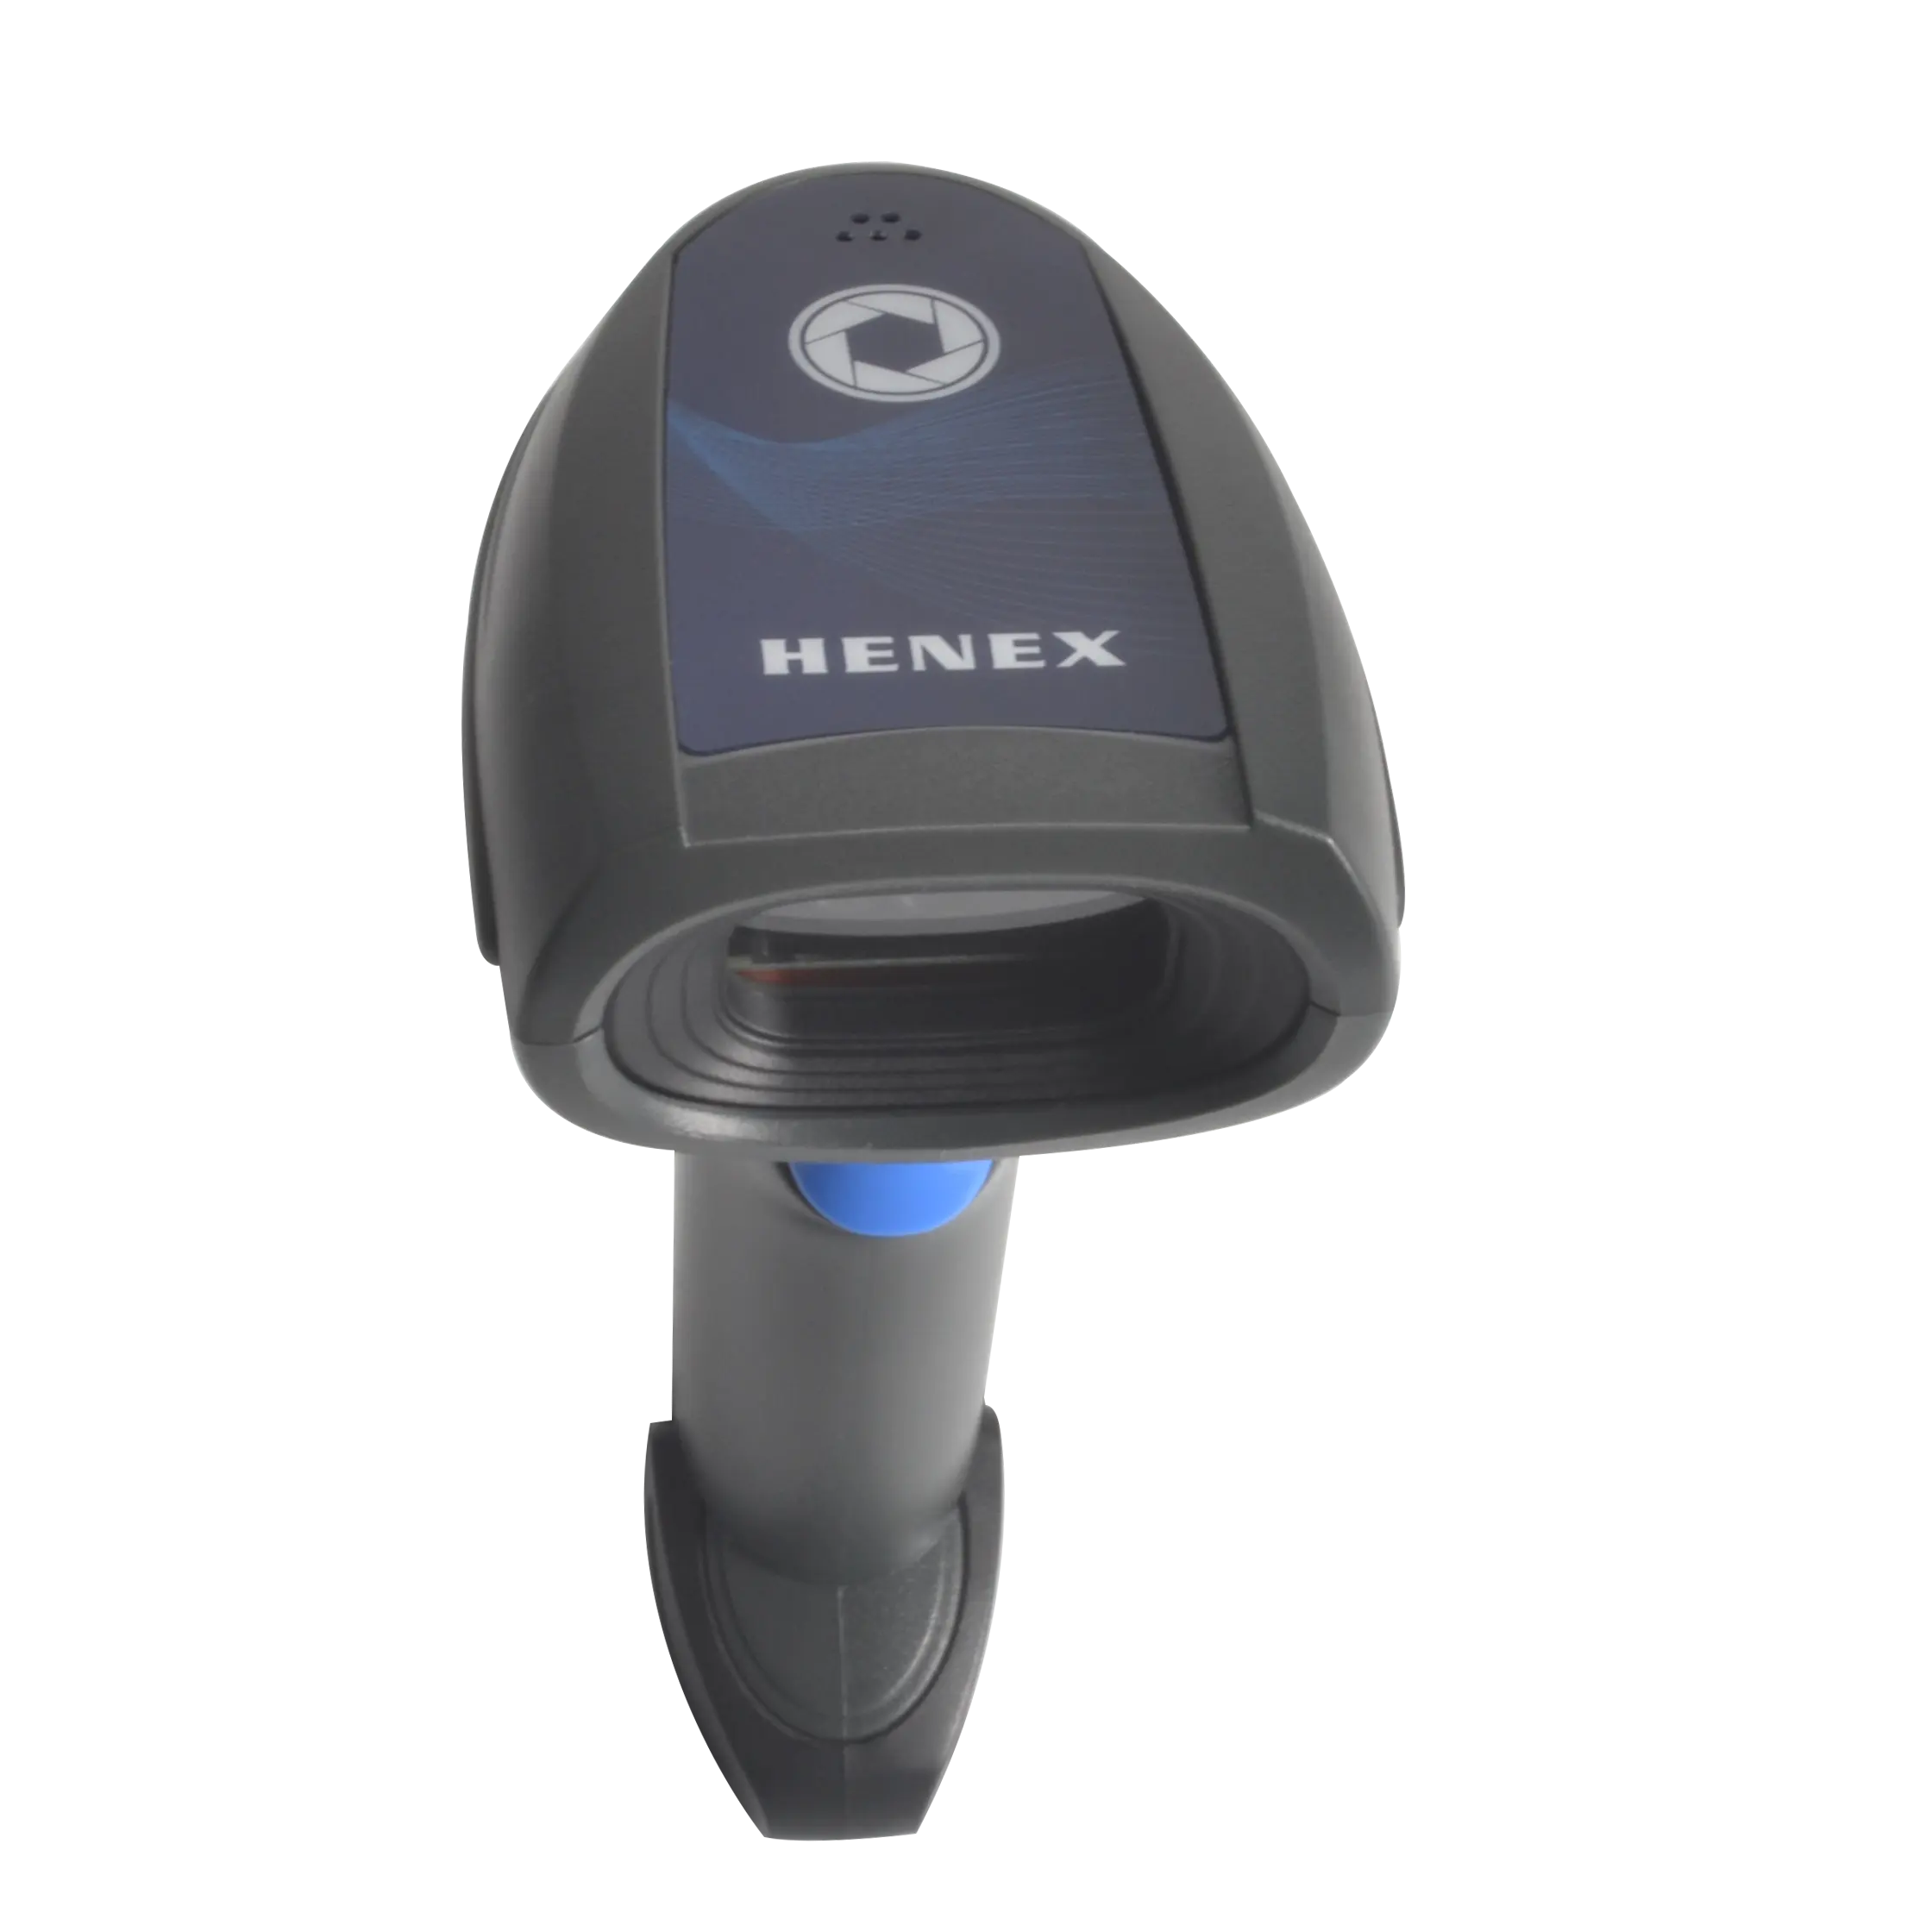 Henex Handheld Scanners Lezen Paspoort Bedrade 1D 2D Barcode Scanner Scan Label Barcode Qr Code